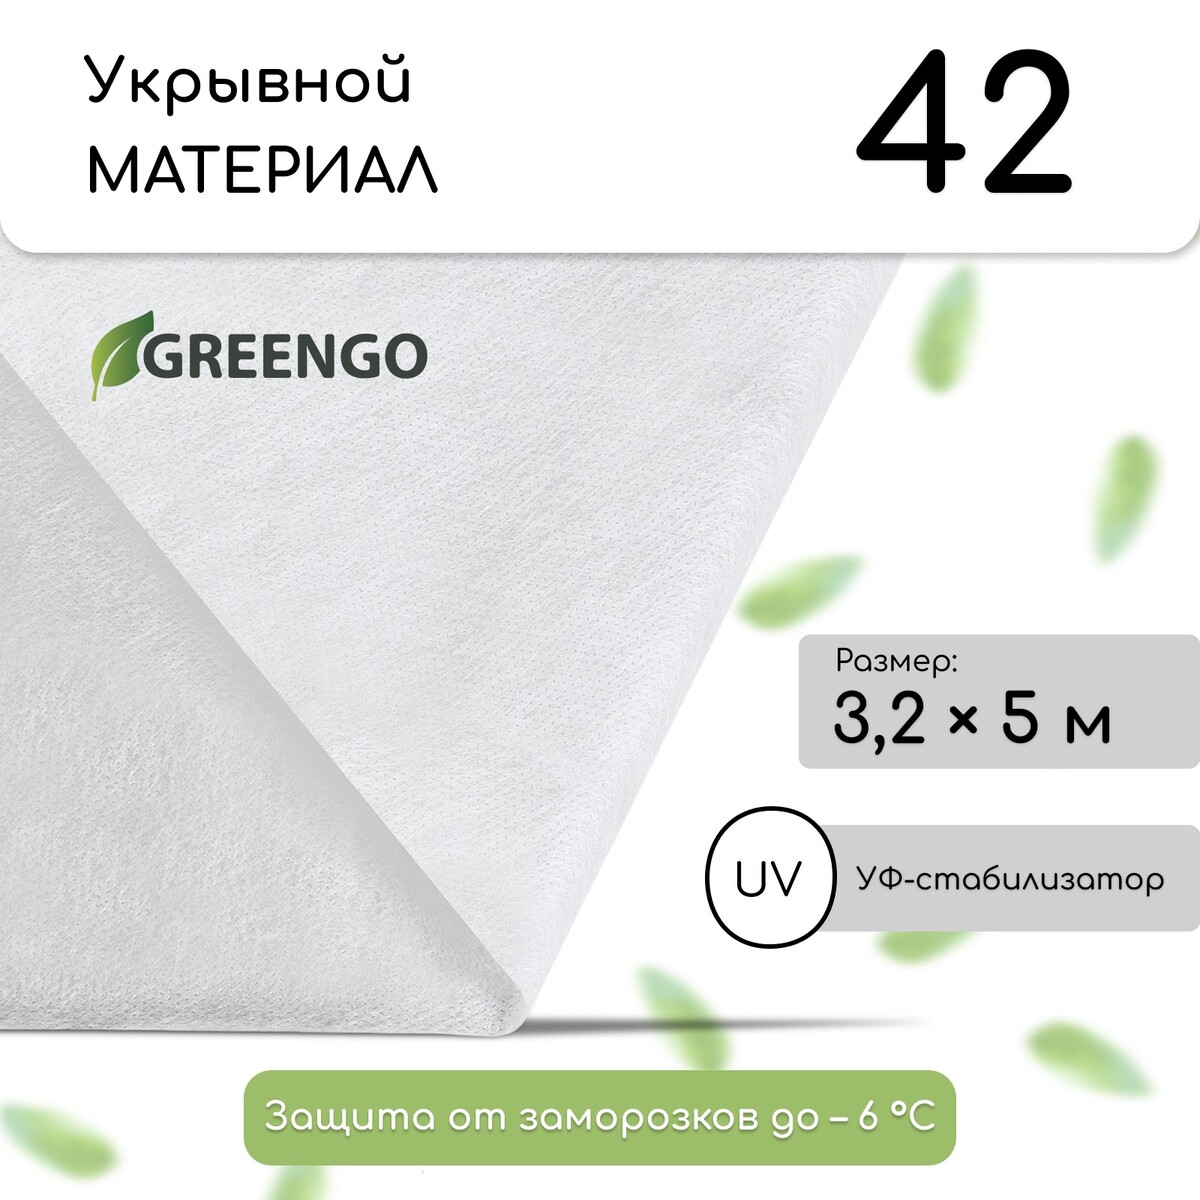 Материал укрывной, 5 × 3,2 м, плотность 42 г/м², спанбонд с уф-стабилизатором, белый, greengo, эконом 30%